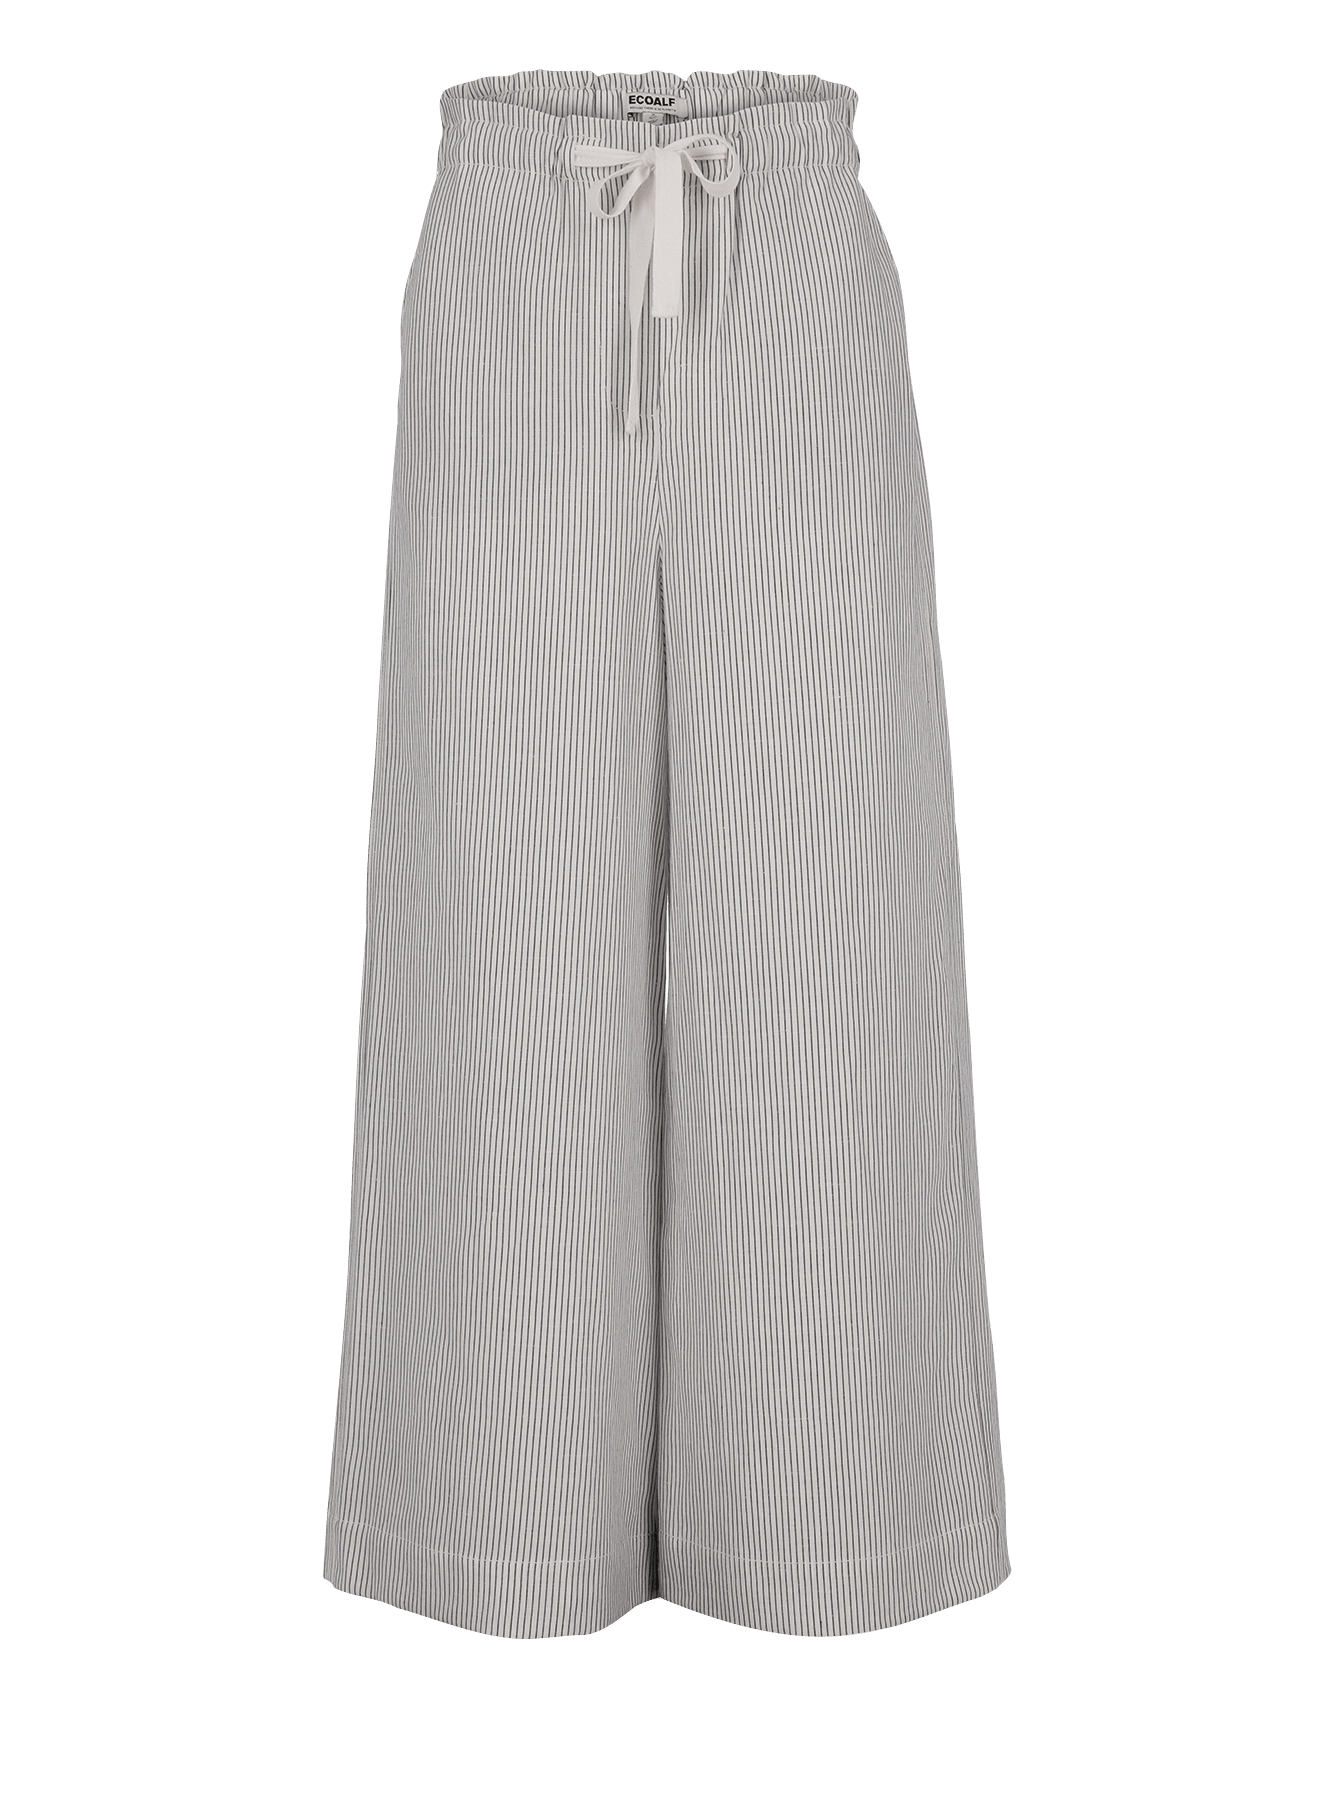 Pantalón Zami White Navy Stripe - ECRU